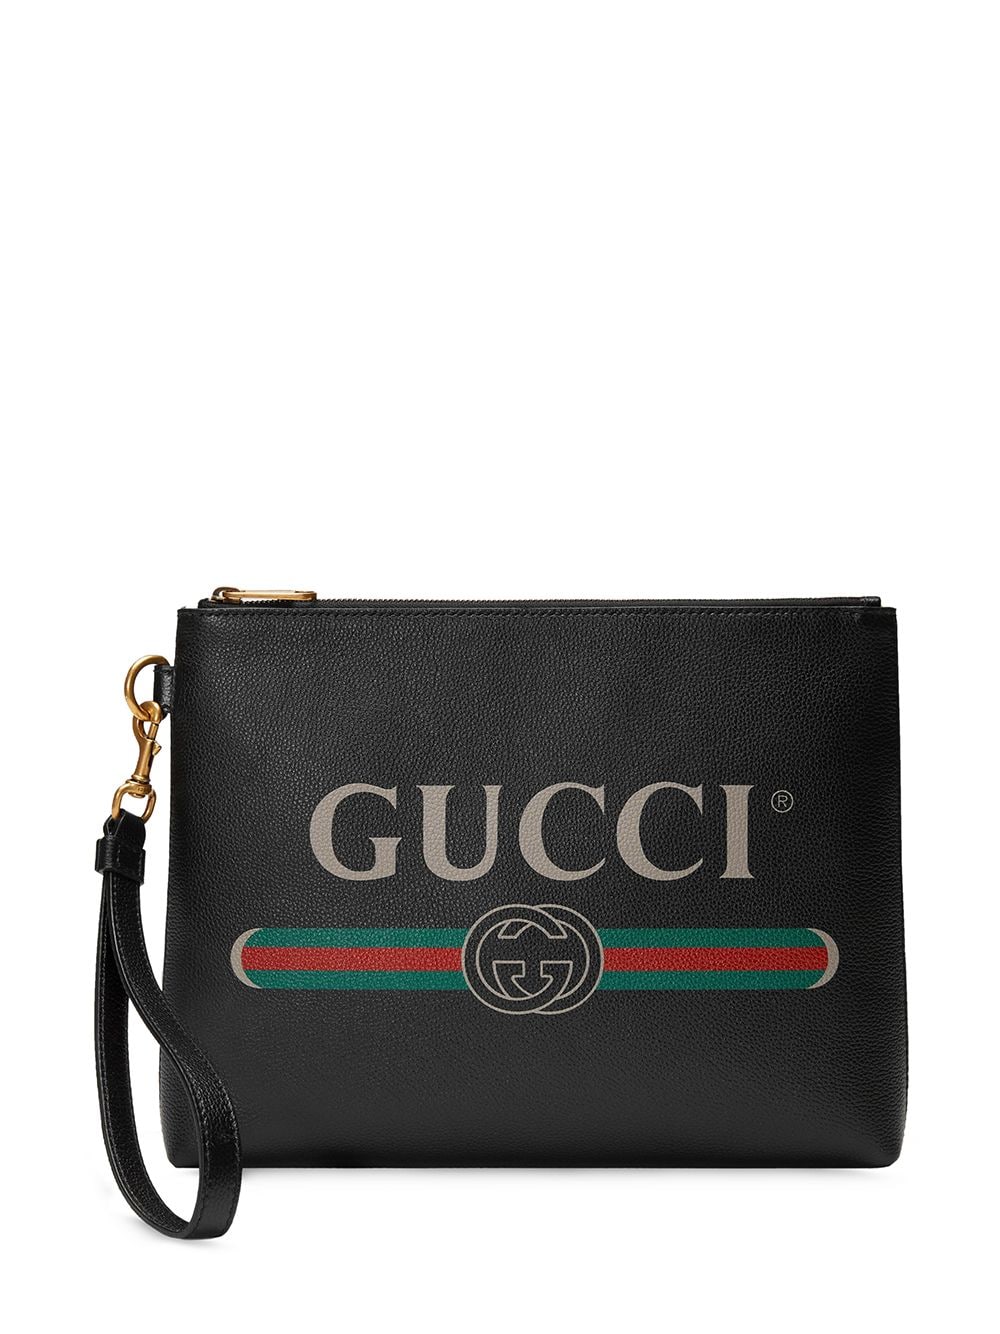 фото Gucci клатч с логотипом